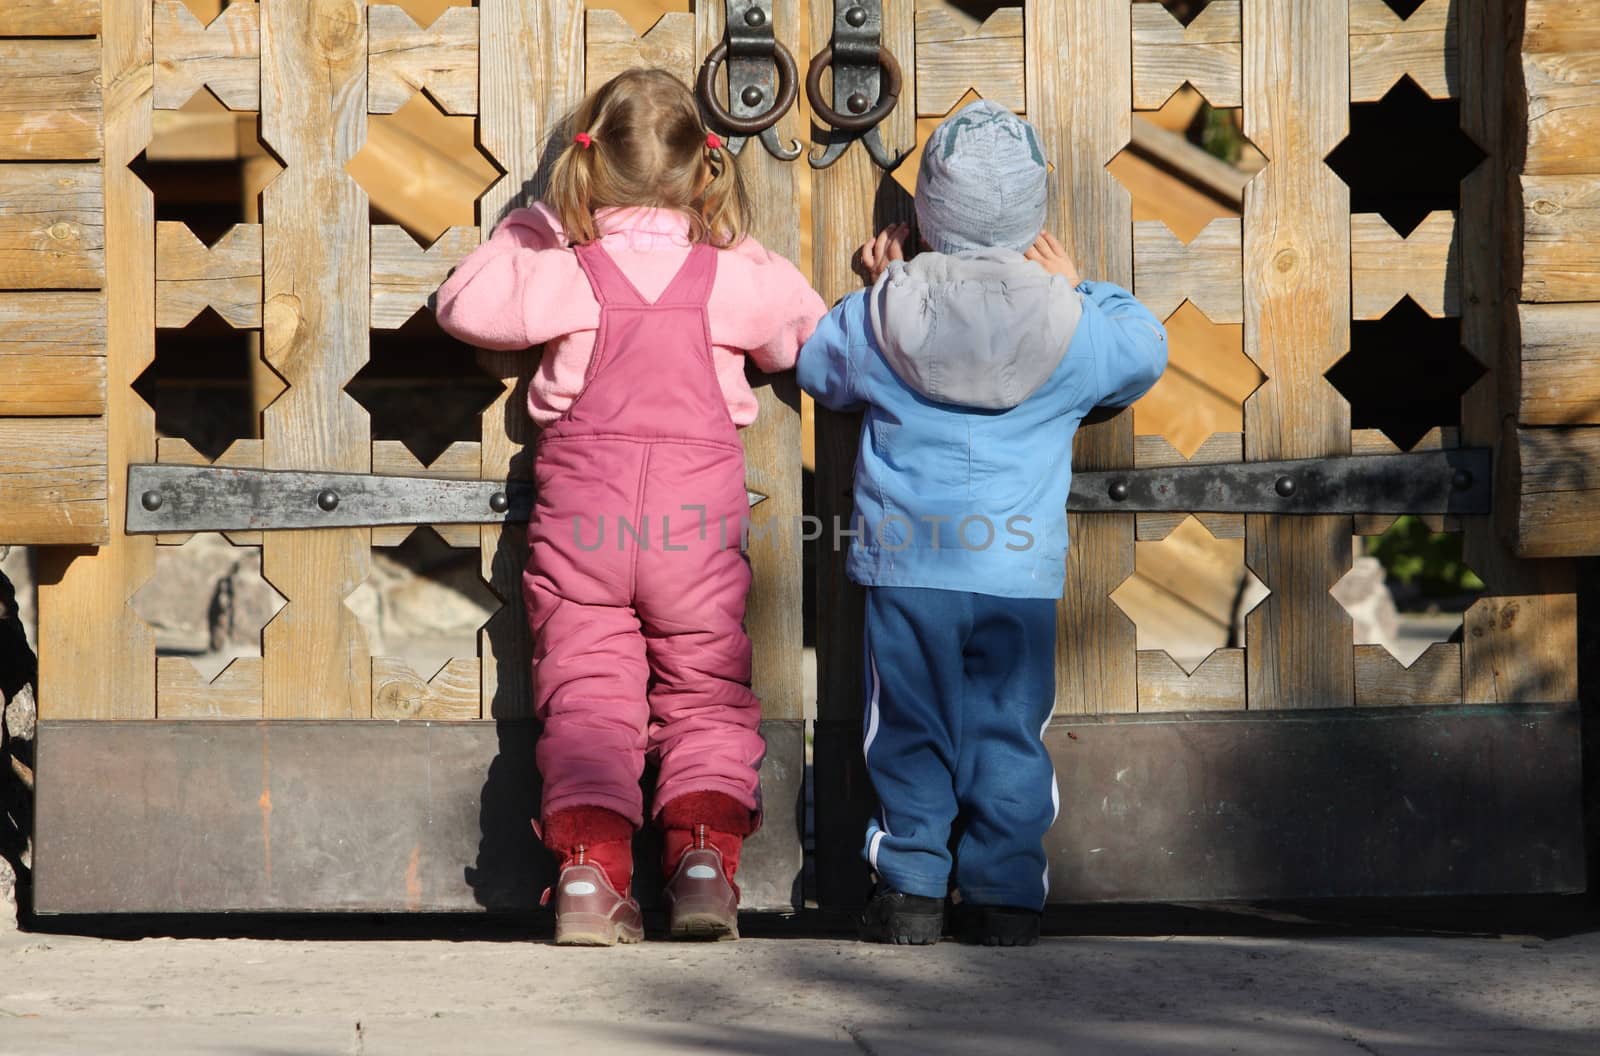 Children near the wooden gates by dedmorozz